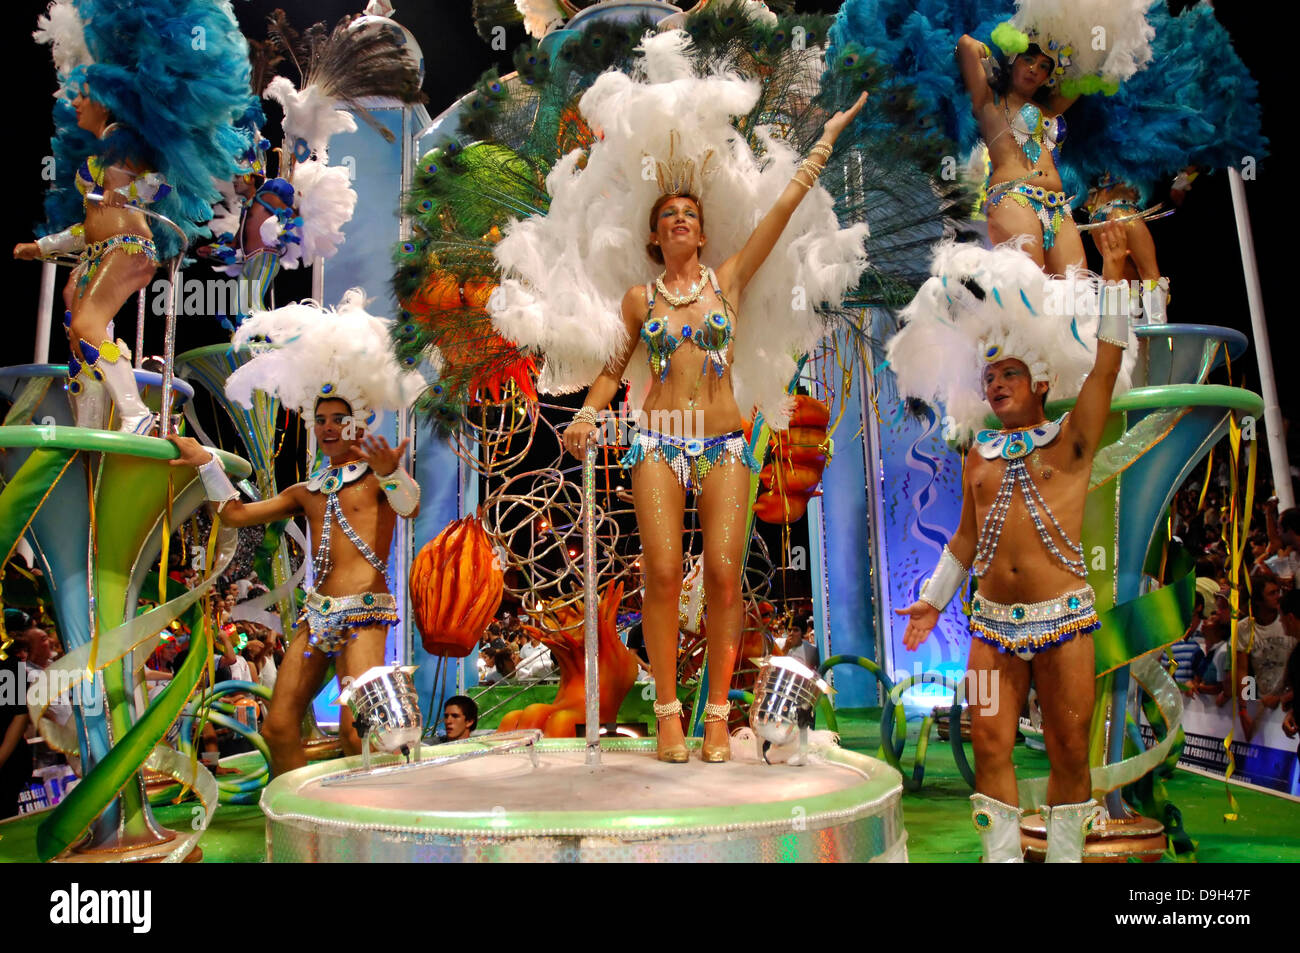 Carnaval de l'Argentine. Un groupe de danseurs dansant sur l'un des flotteurs participant à la parade Banque D'Images